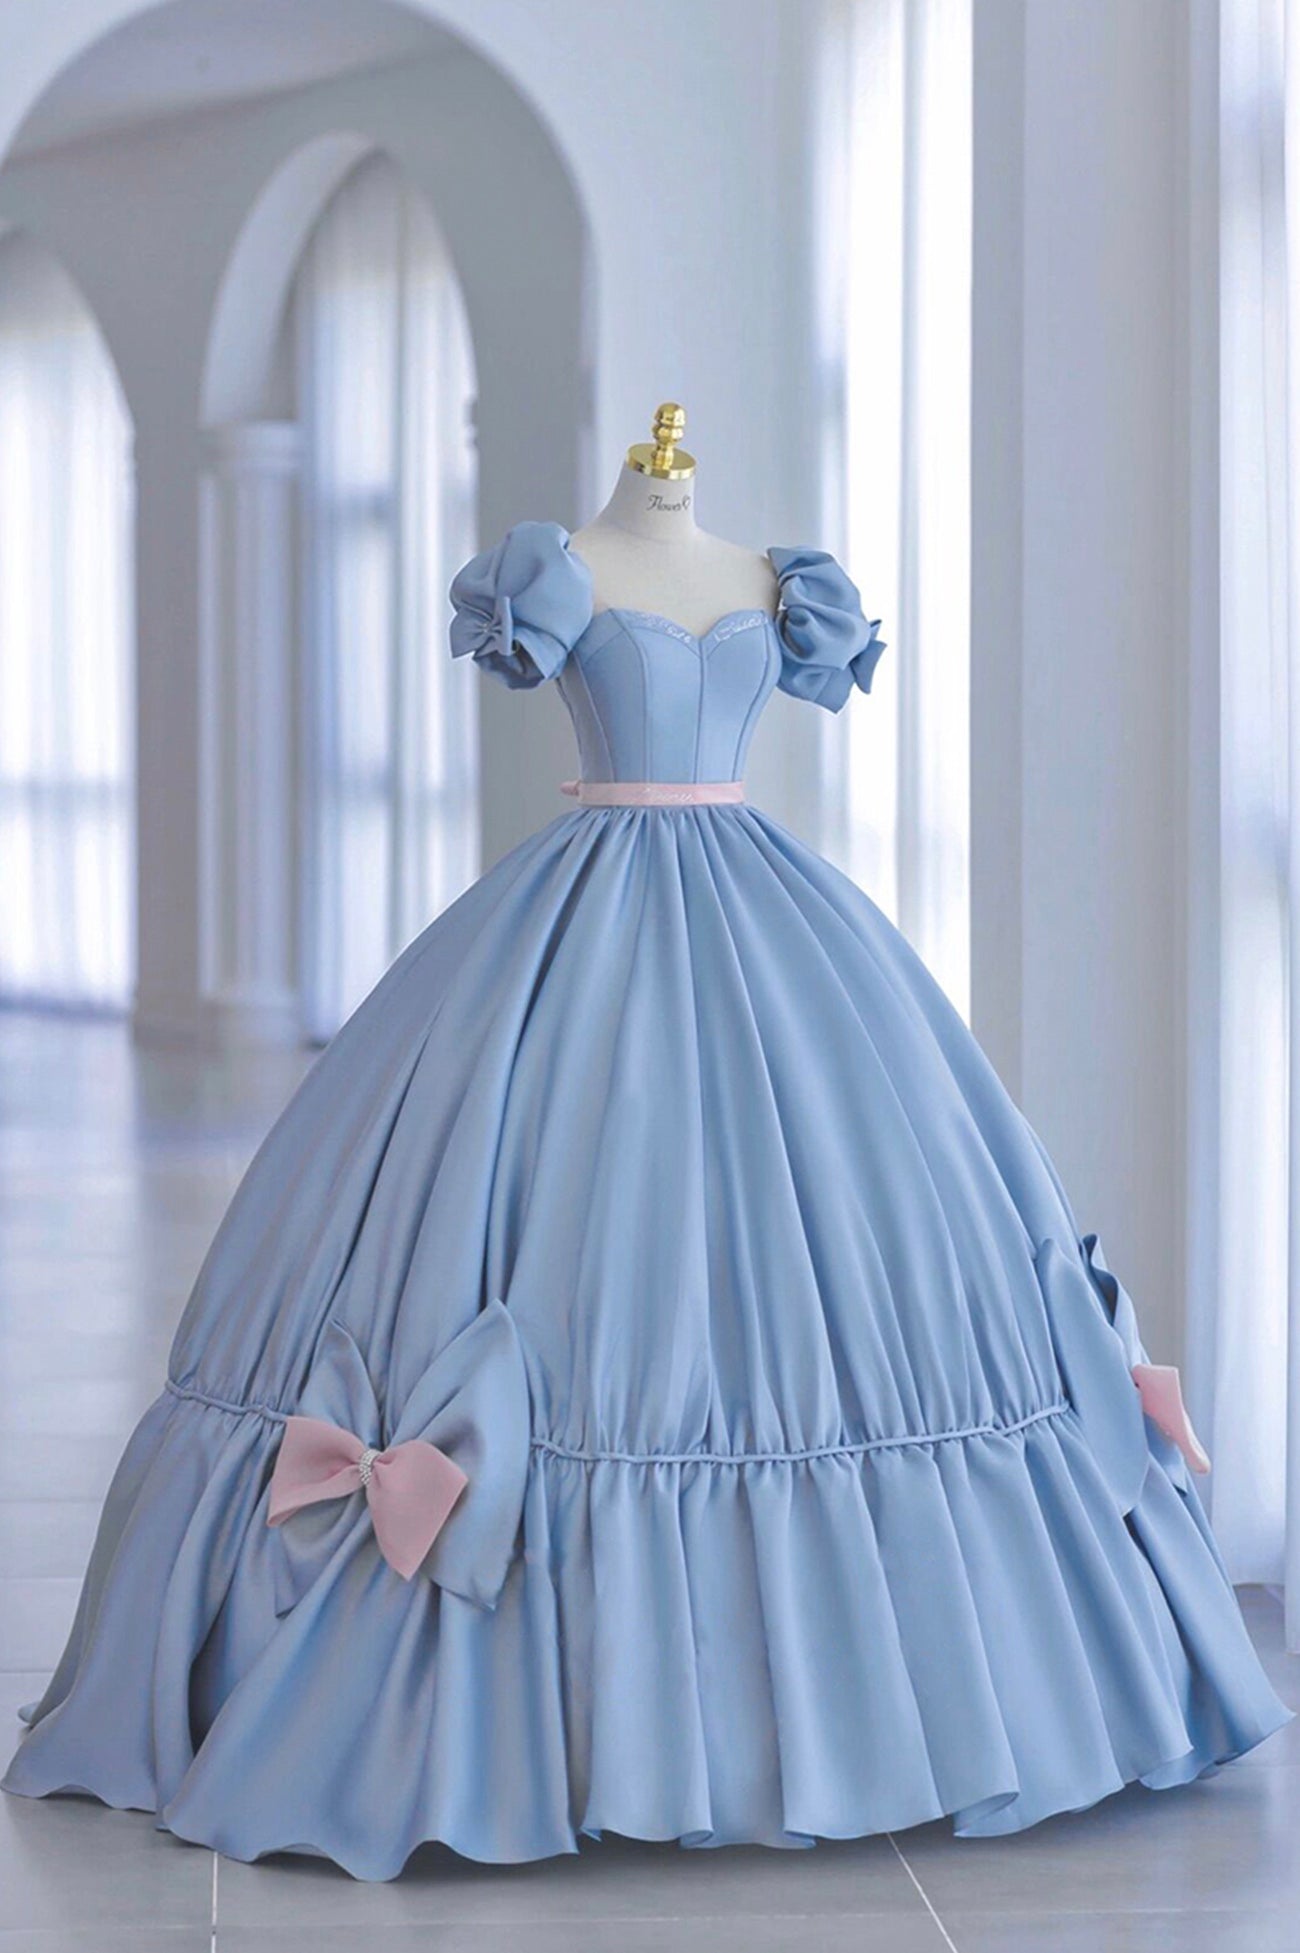 Blue Satin Long Princess Dress Outfits For Girls, Cute Short Sleeve Ball Gown Sweet 16 Dress